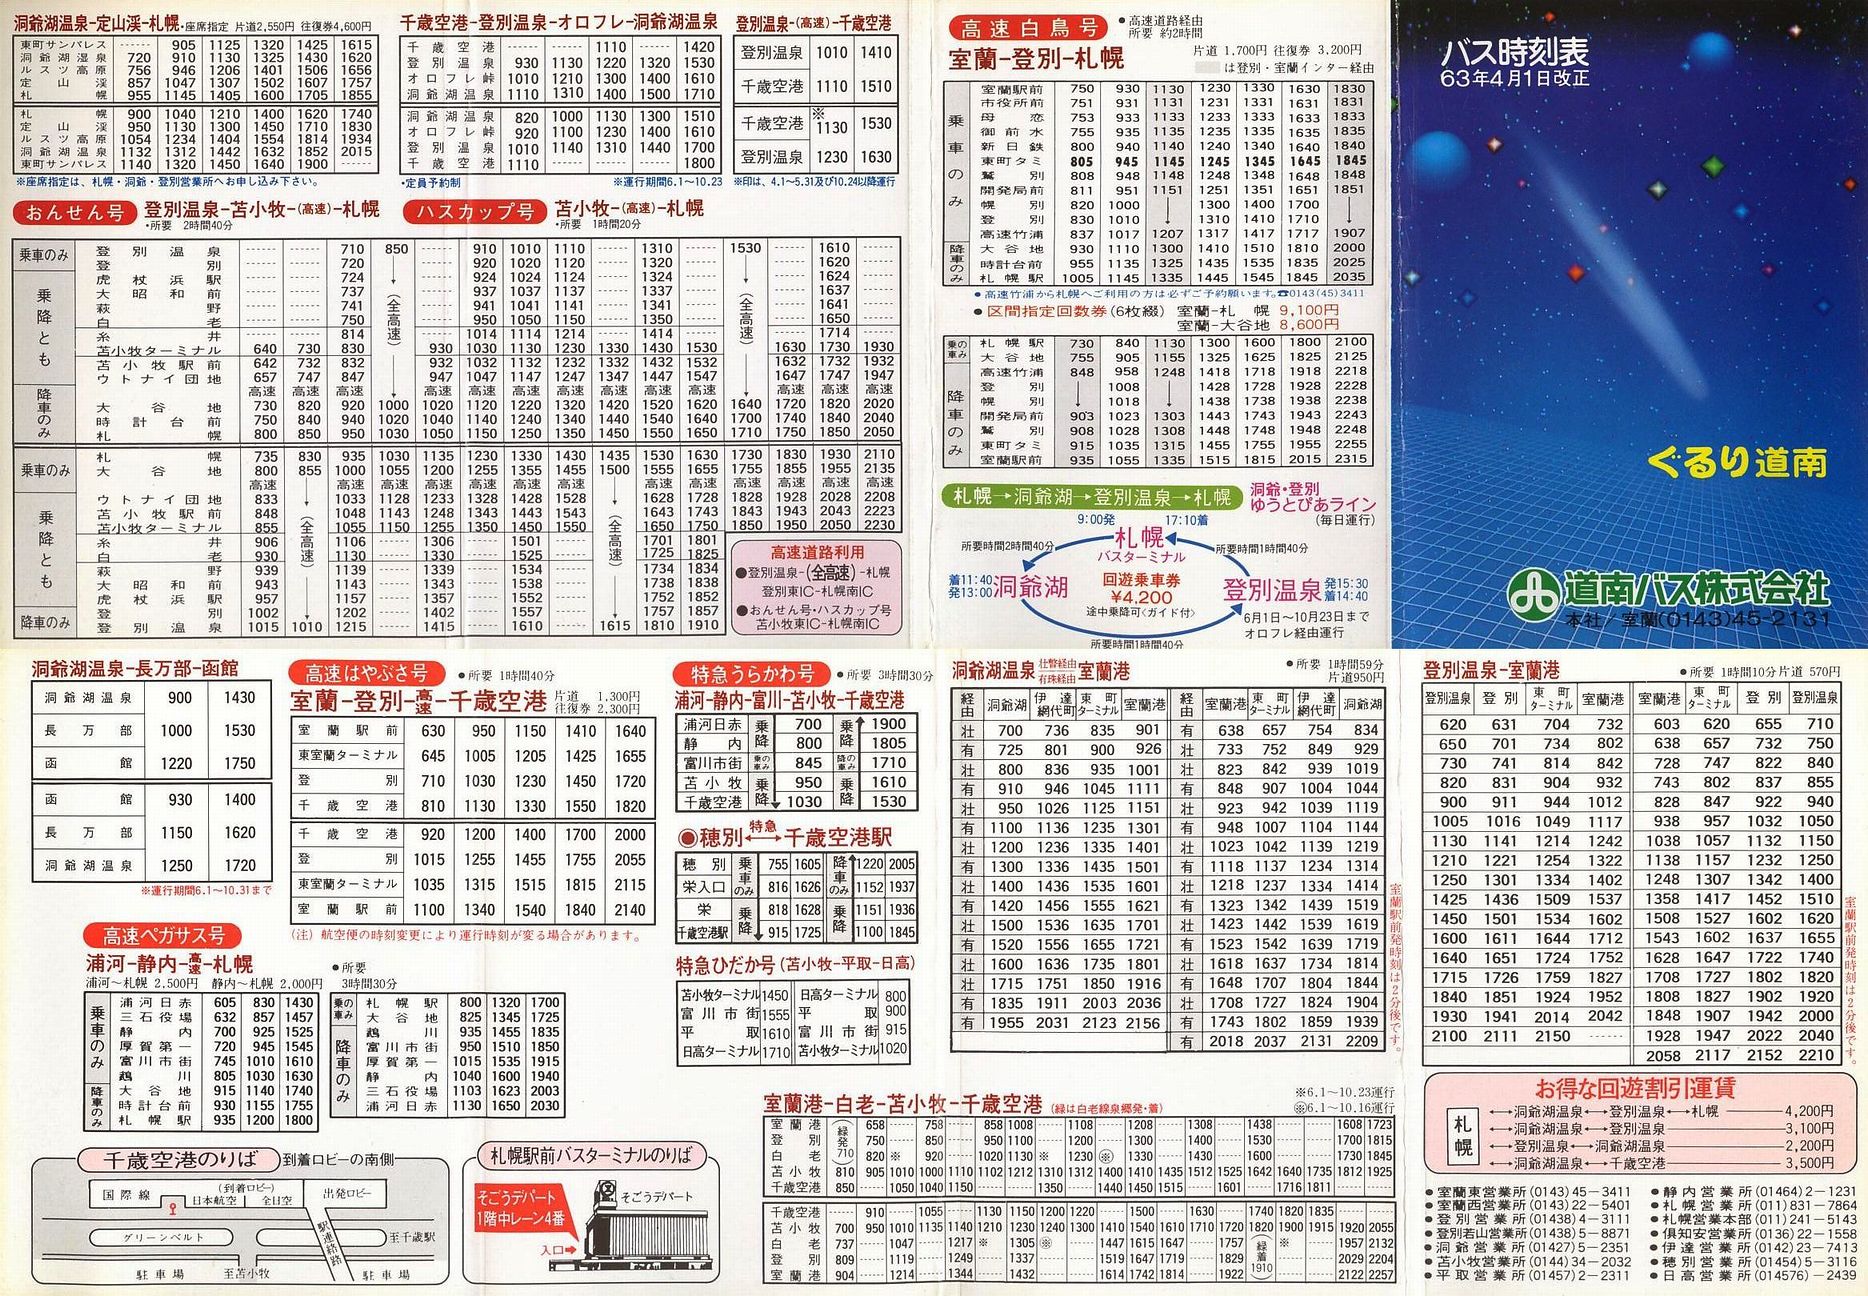 1988-04-01改正_道南バス_ぐるり道南バス時刻表